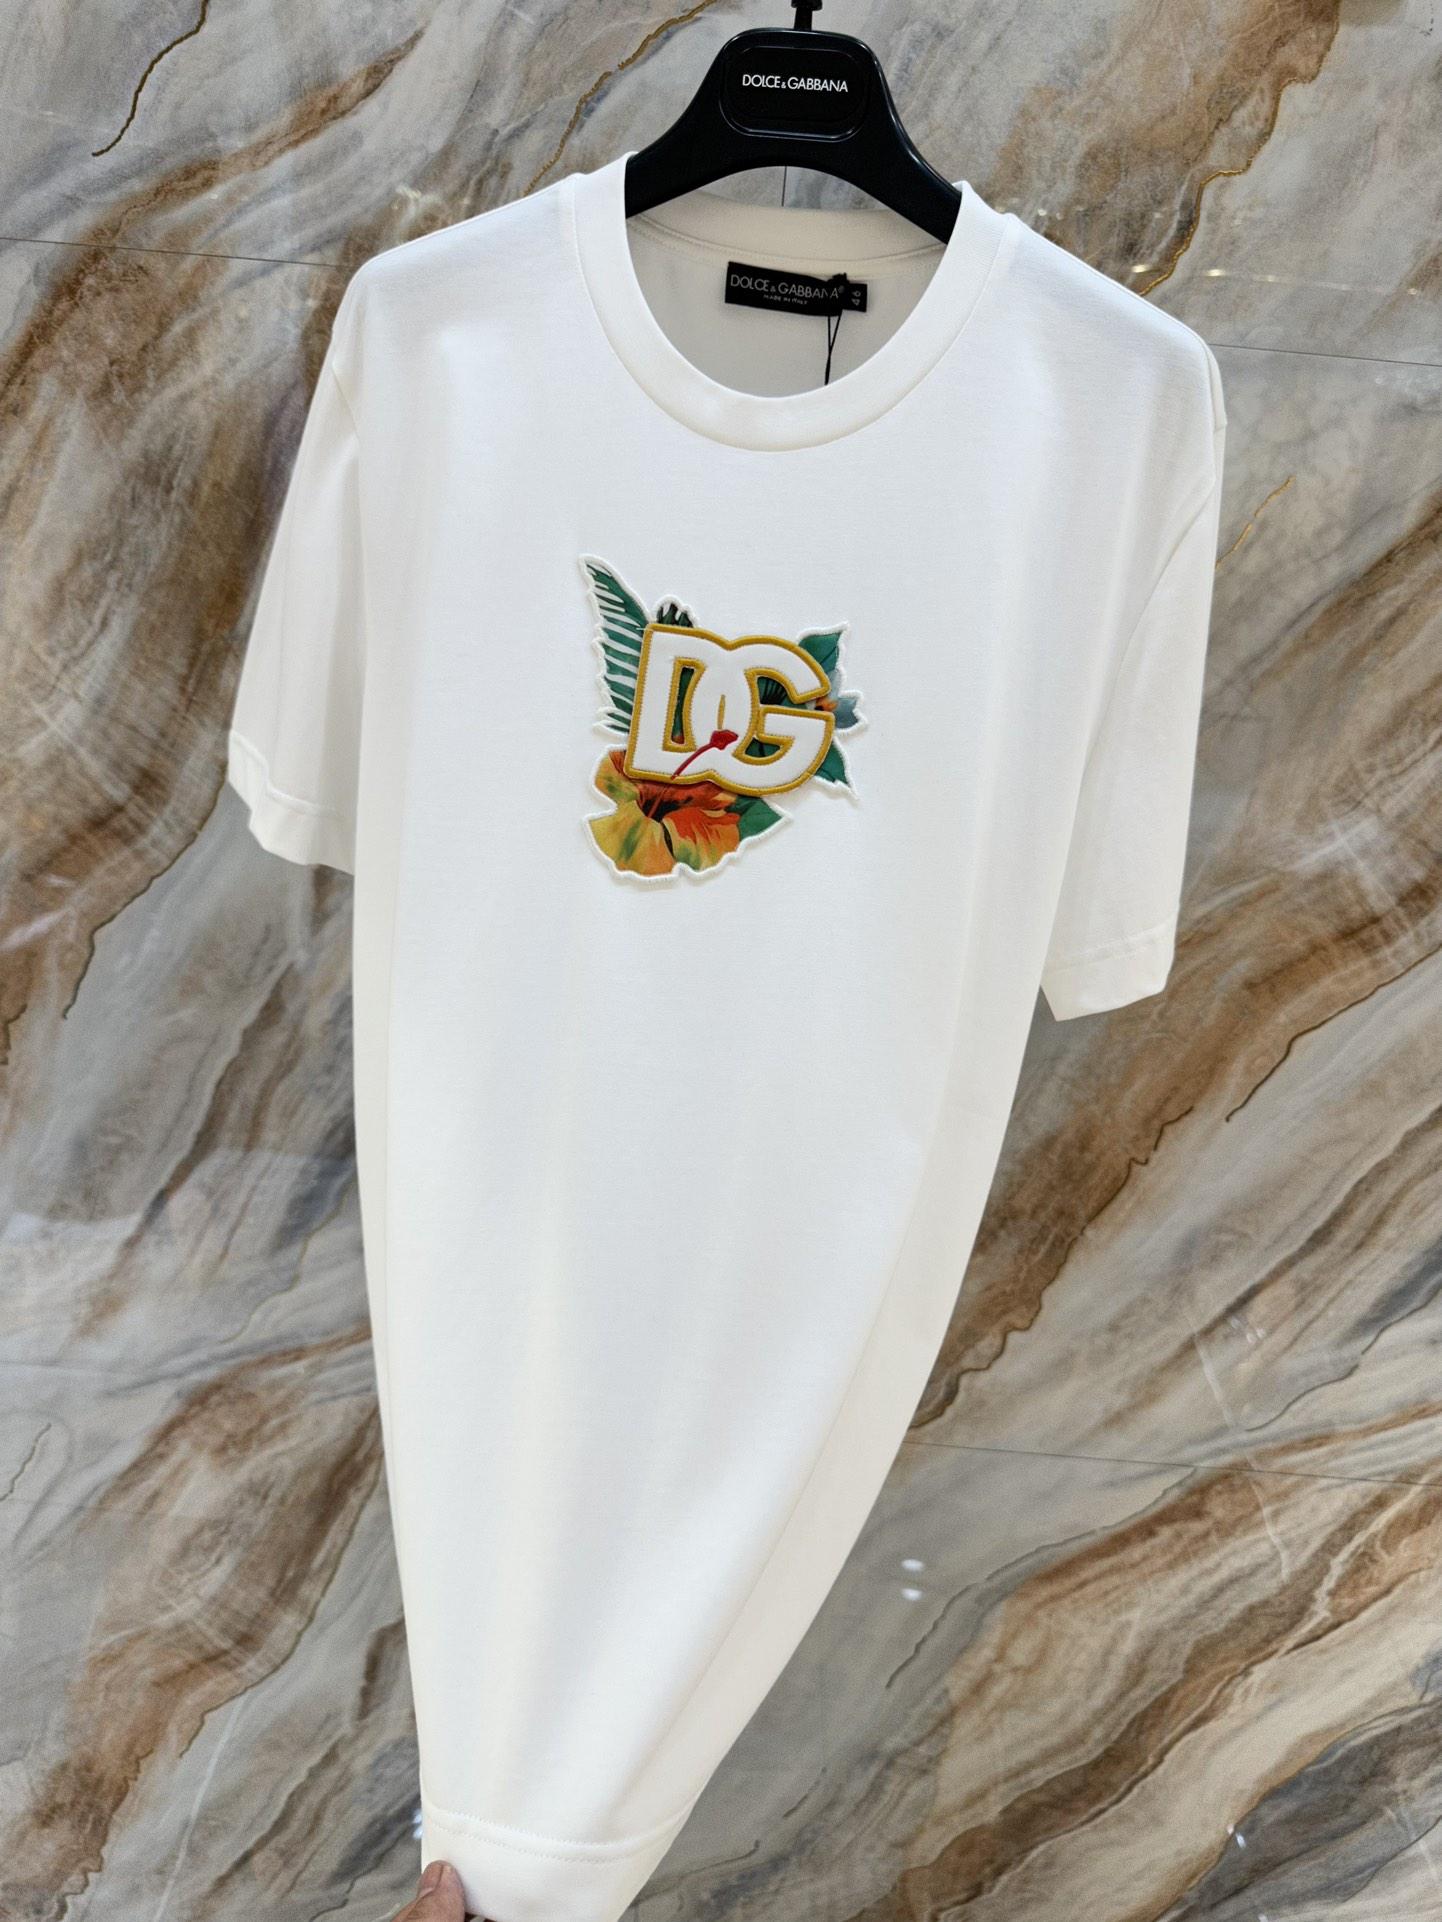 cotton-t-shirt-dg-7223_16845021152-1000